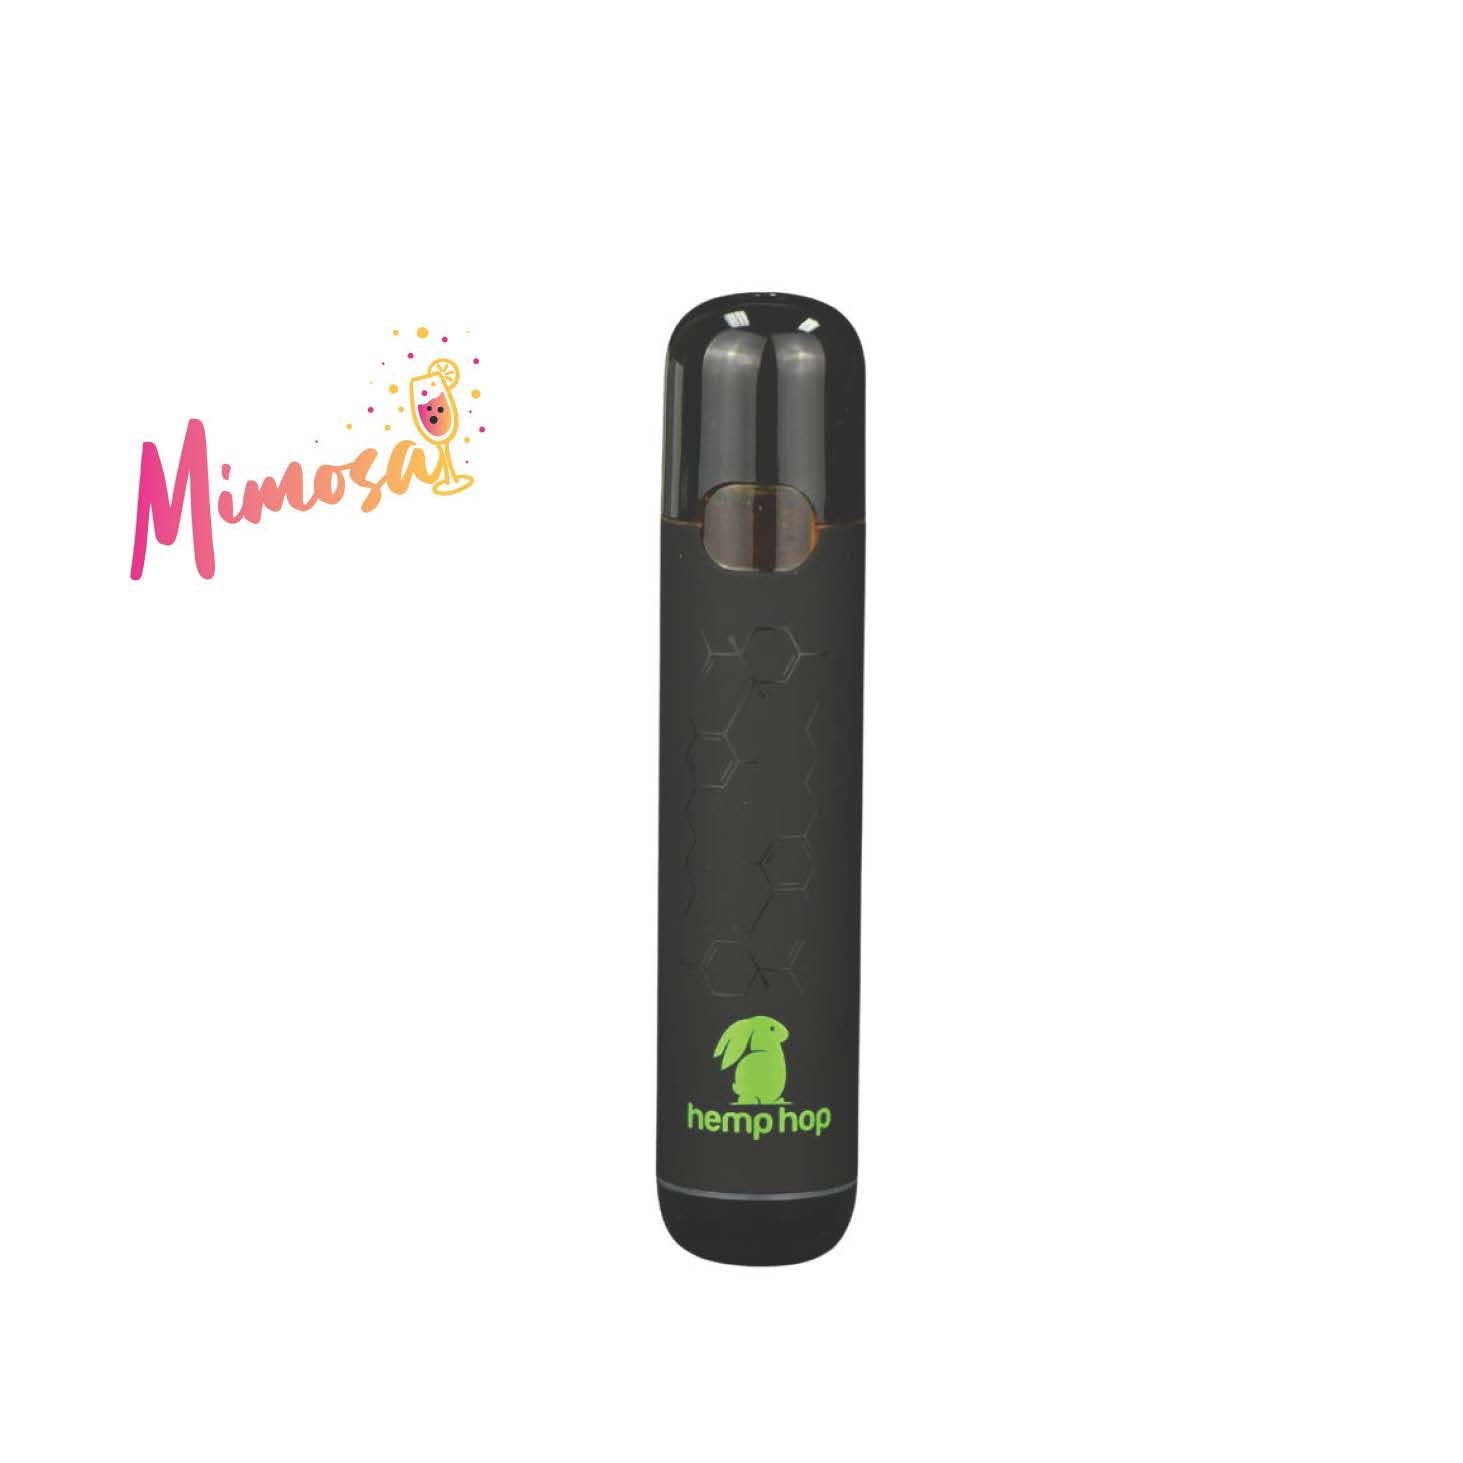 Mimosa Delta-8 THC Disposable Vape